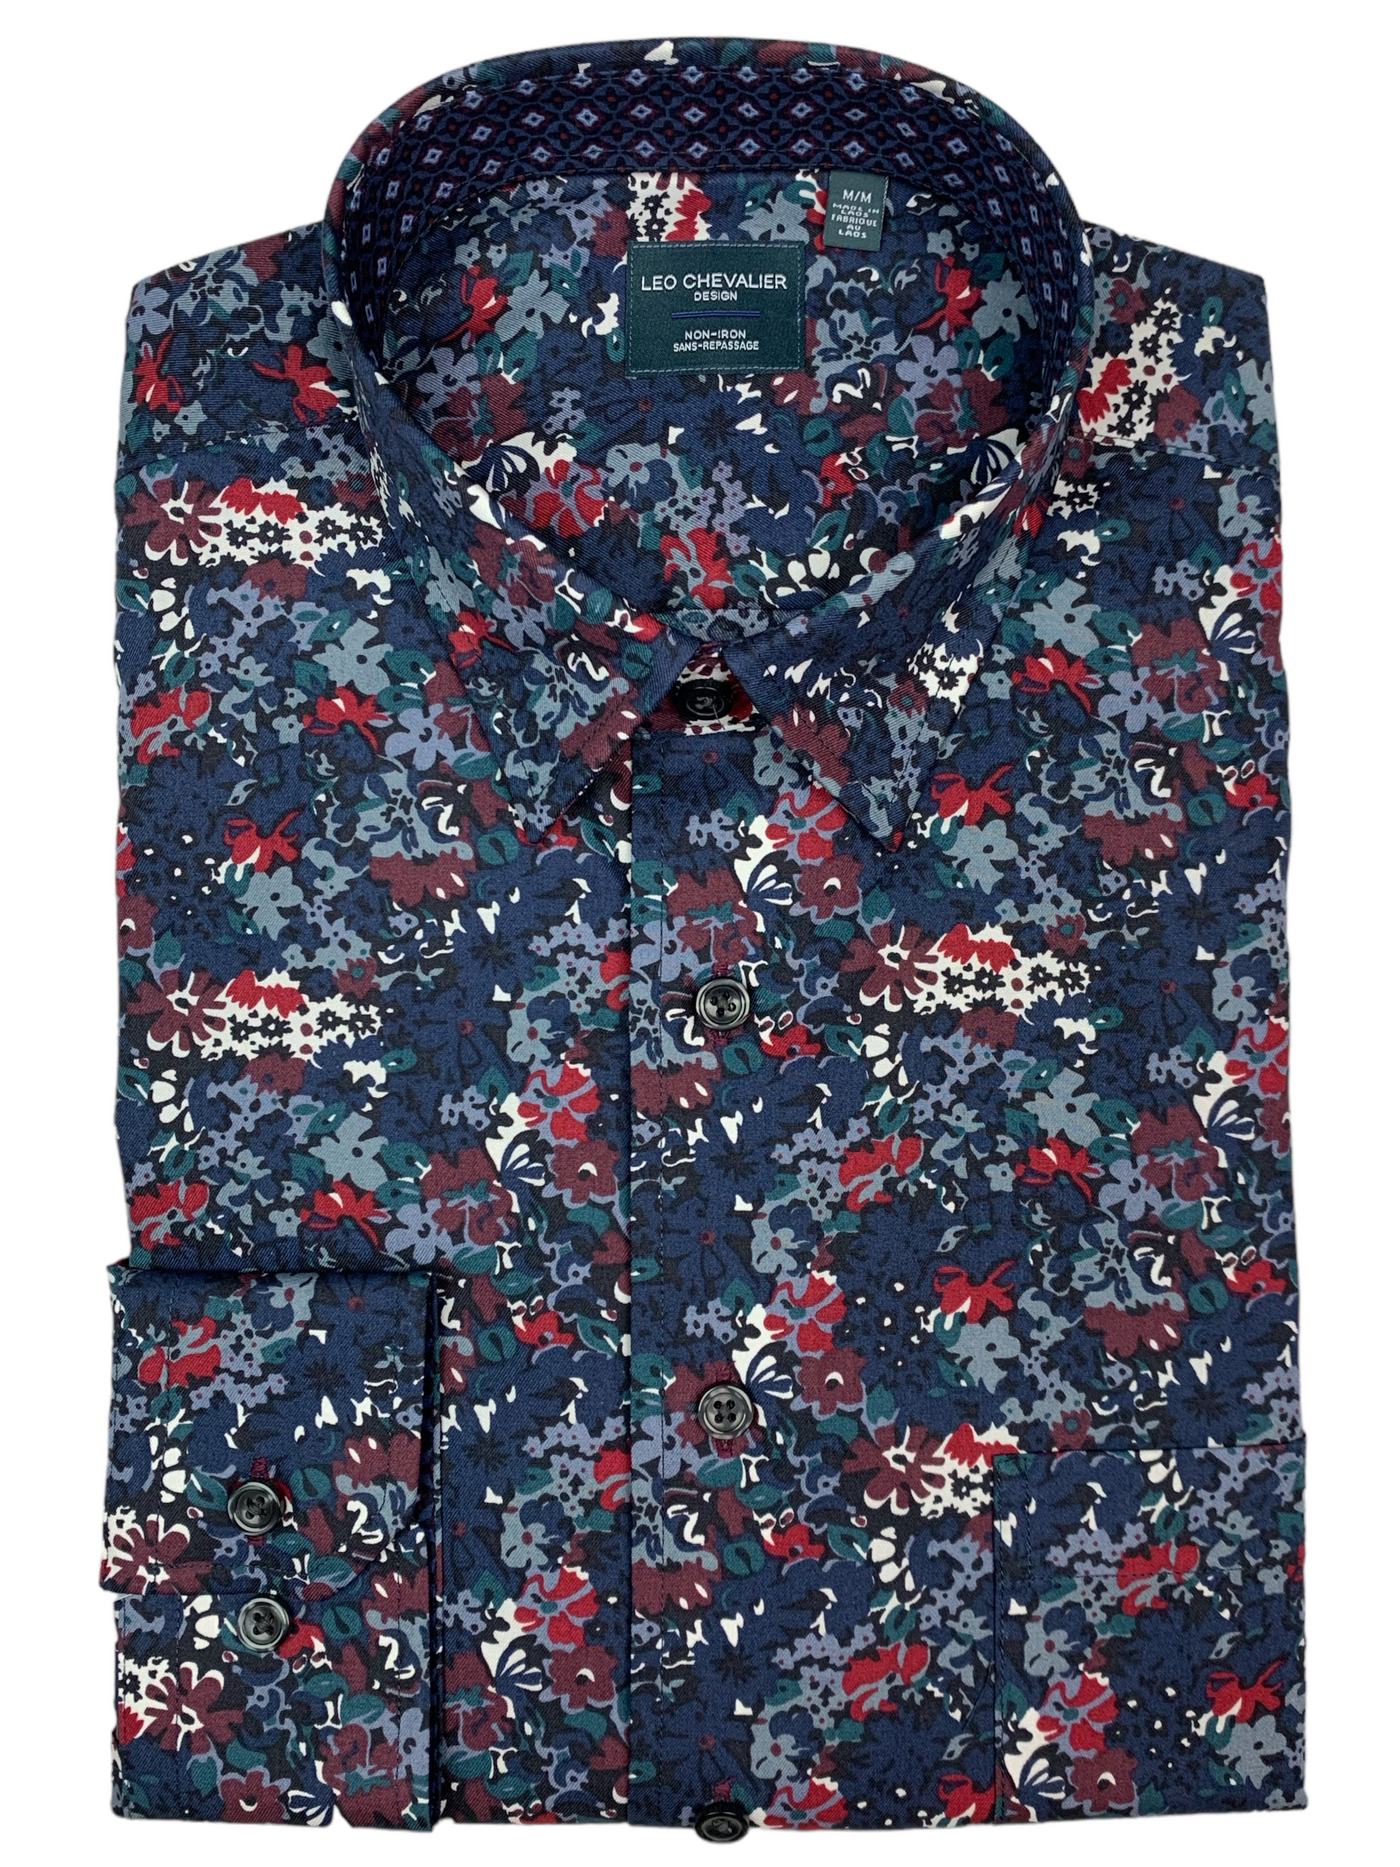 Chemise manches longues marine à motif floral